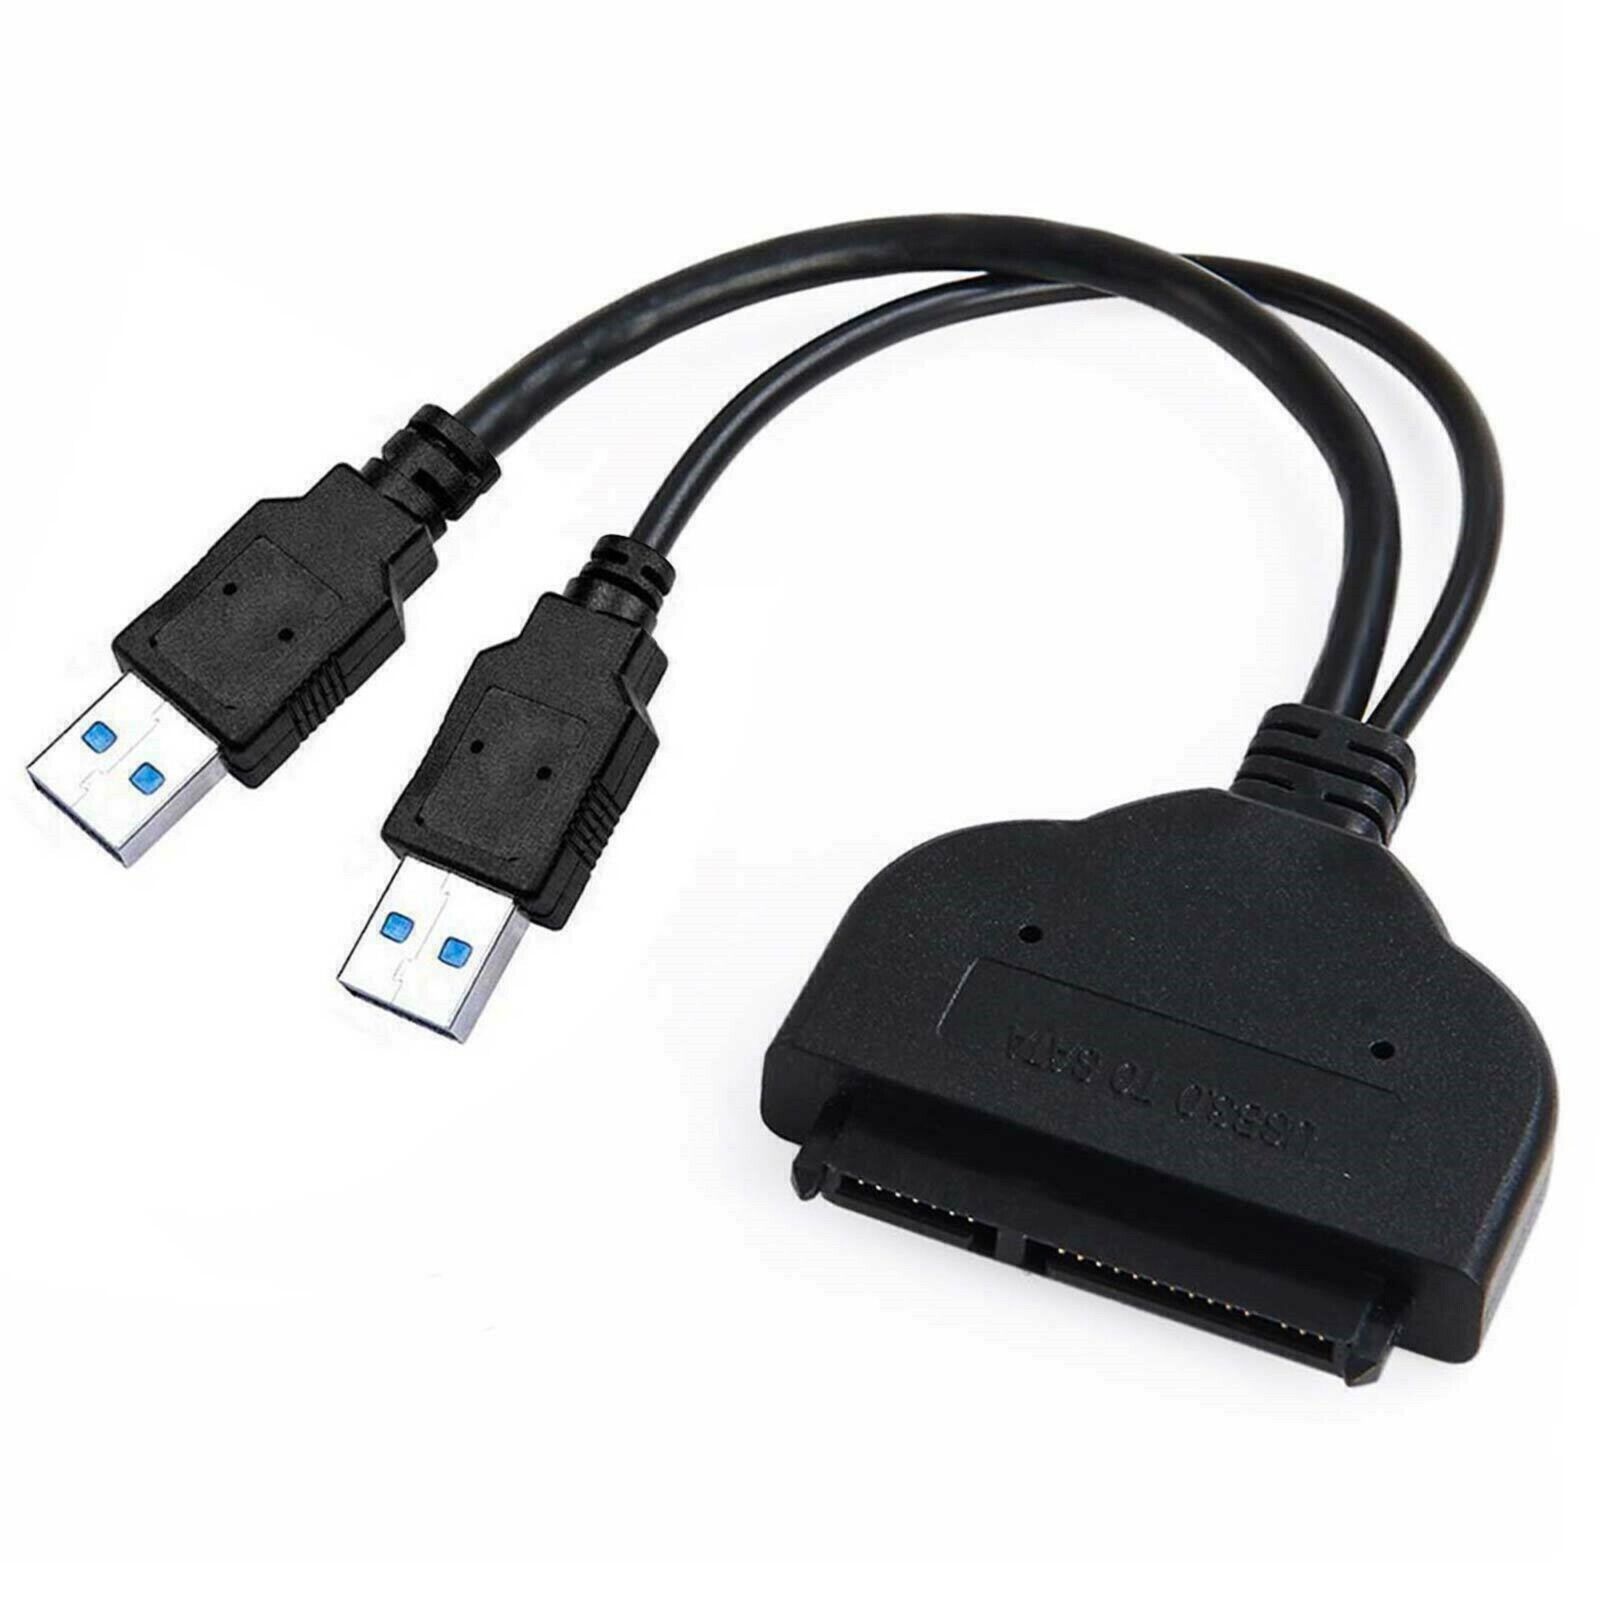 Charlotte Bronte fisk og skaldyr gyldige USB 3.0 to SATA 2.5 External Hard Disk Drive Adapter Cable - Contrado  Digital